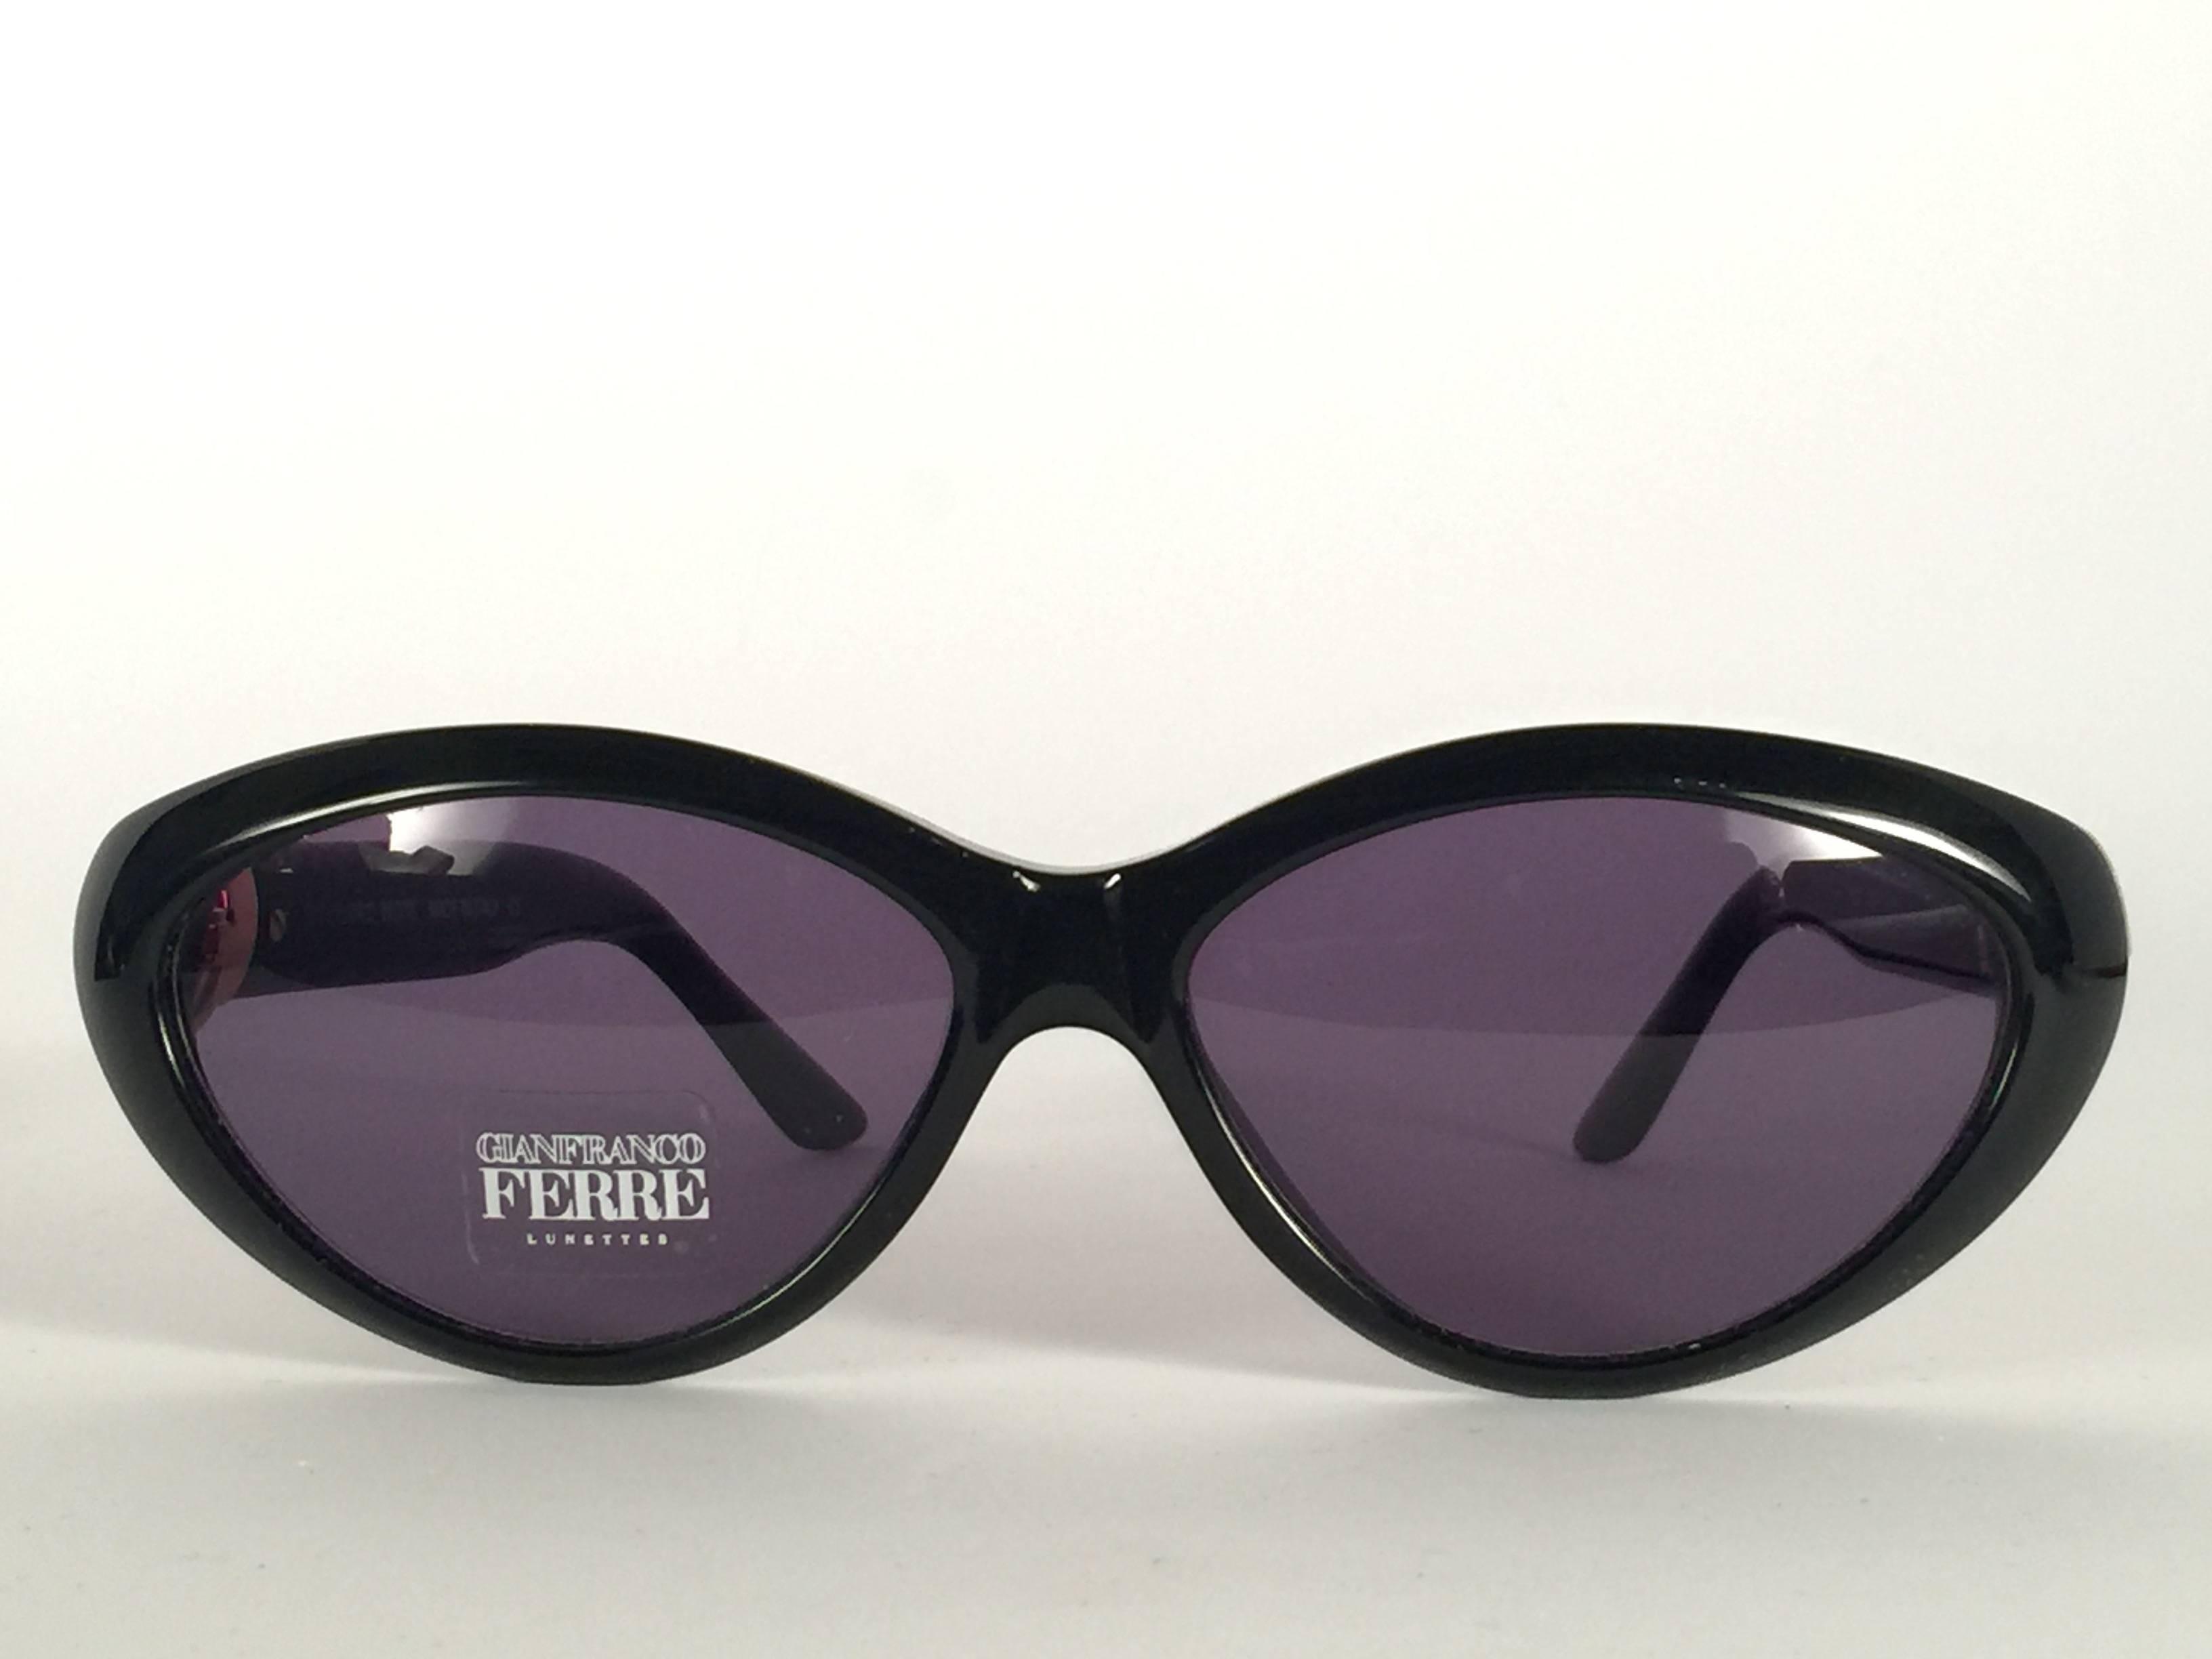 Neue Vintage-Sonnenbrille von Gianfranco Ferre.    

Schwarzer Rahmen mit Strassdetails, der ein Paar makellose graue Gläser hält.   

Neu, nie getragen oder ausgestellt. 

 Hergestellt in Italien.